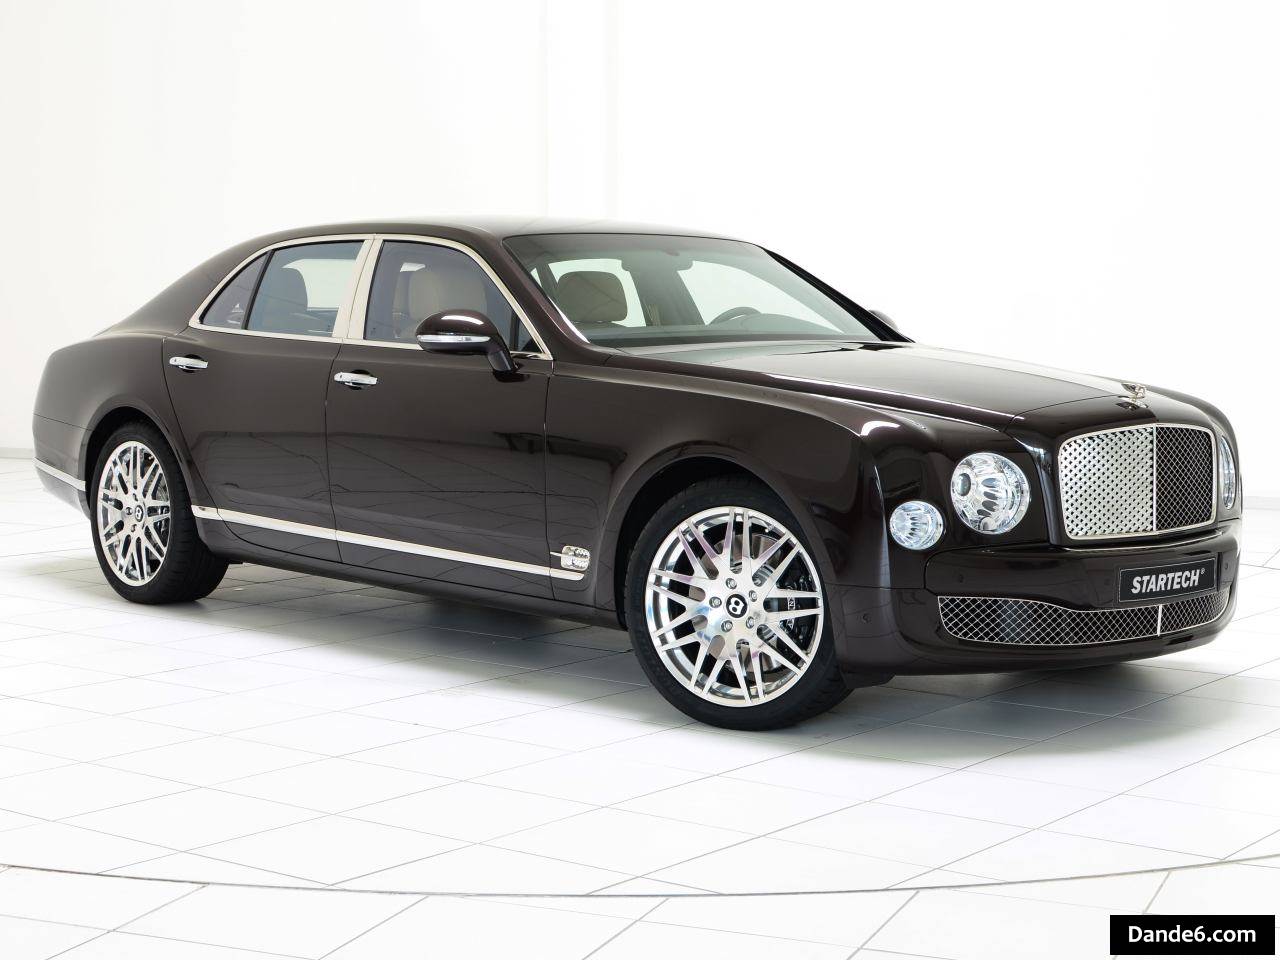 2015 STARTECH Bentley Mulsanne